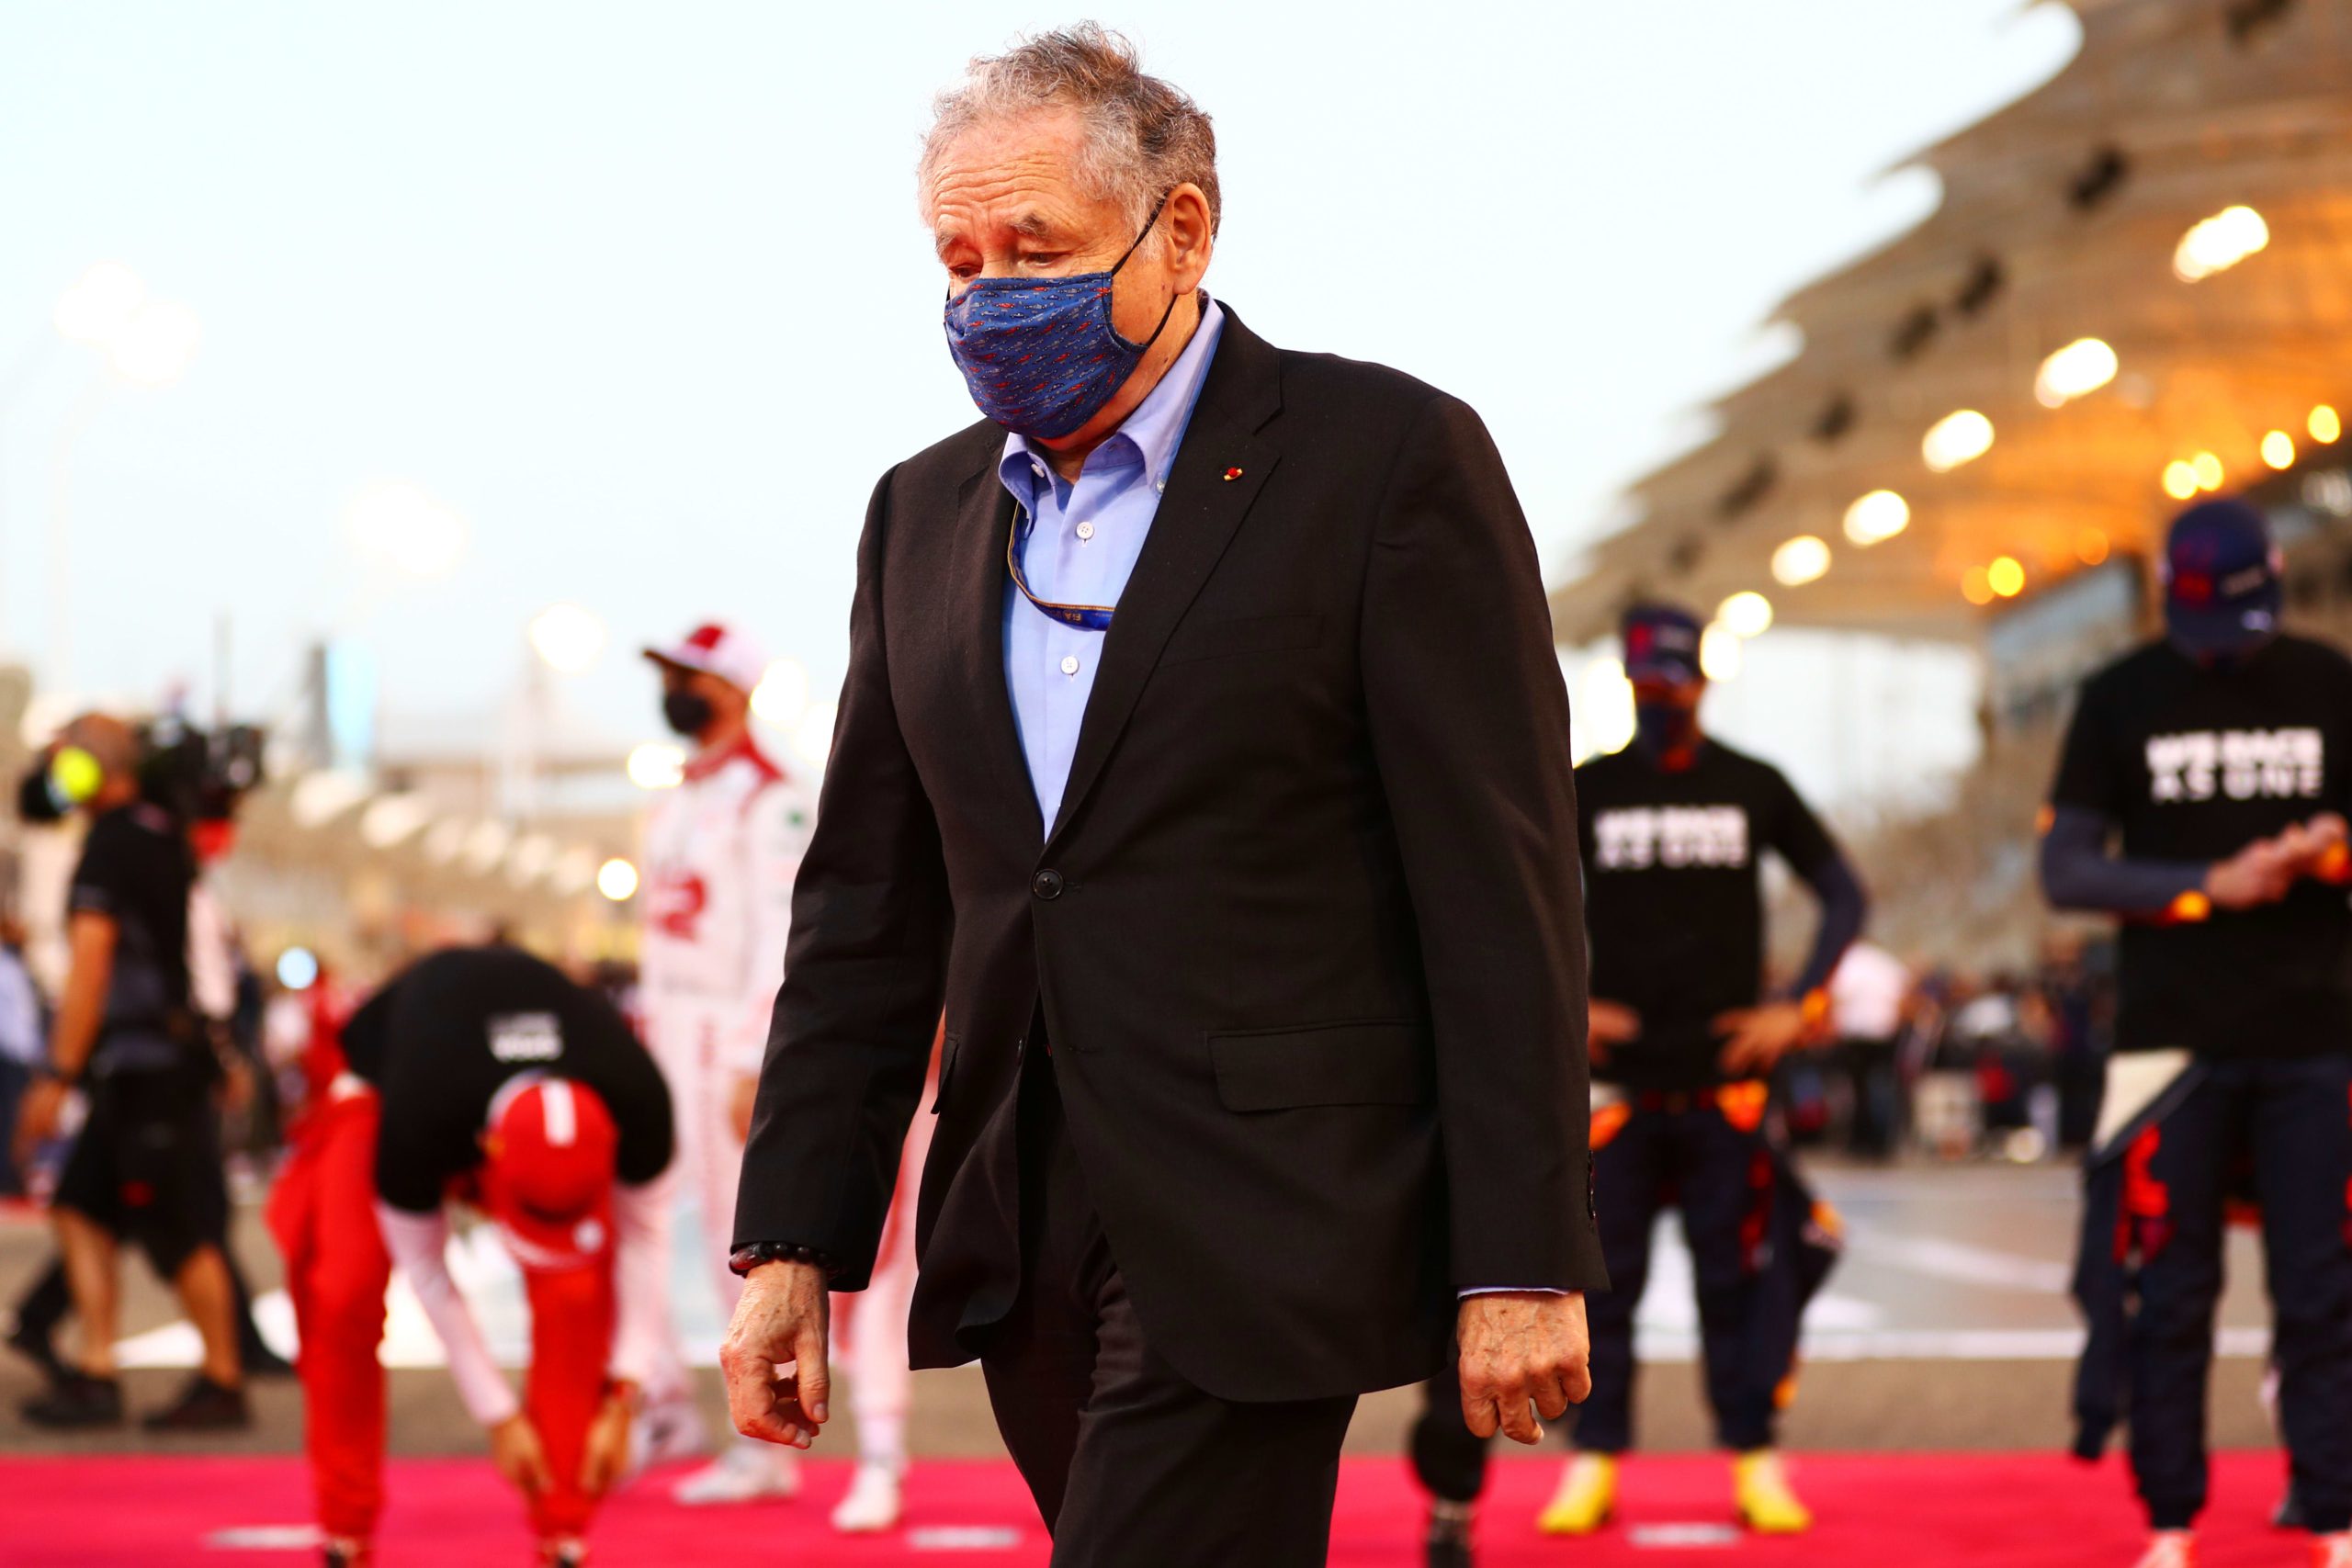 La F1 no debería involucrarse en política, dice el jefe de la FIA antes del Gran Premio de Arabia Saudita